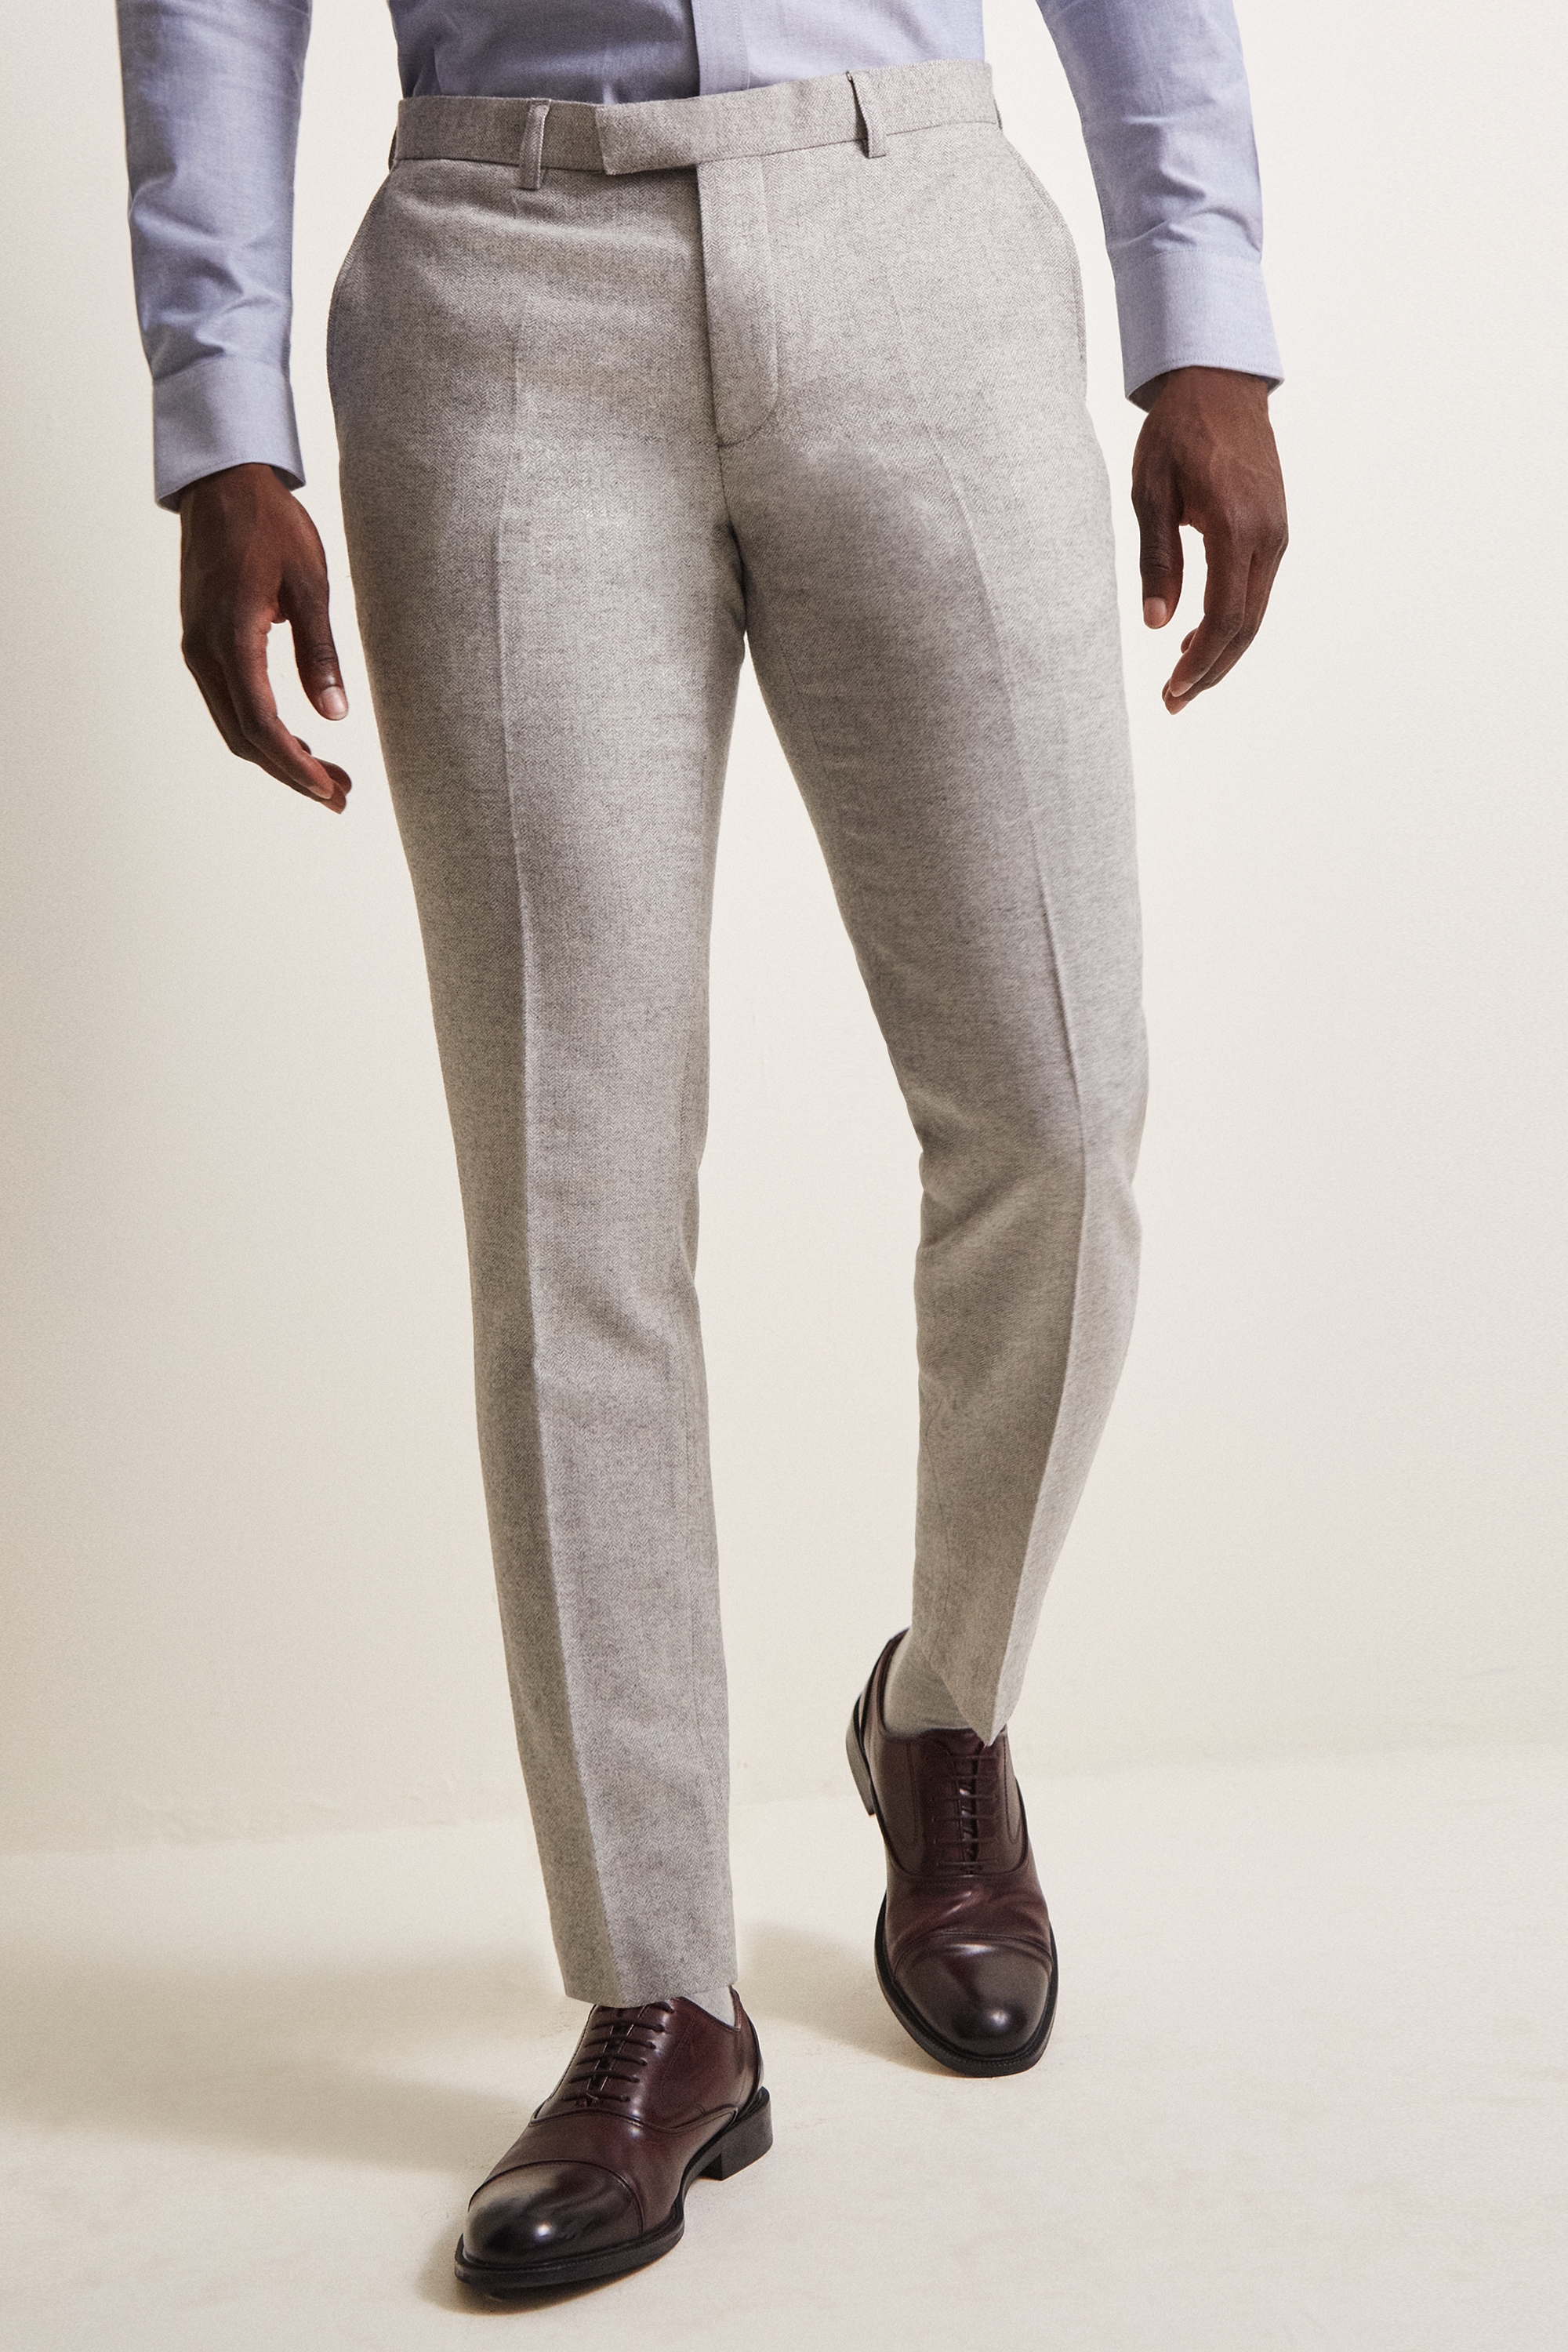 Men Casual Herringbone Tweed Pants Wool Blend Straight Leg Trousers Slim Fit